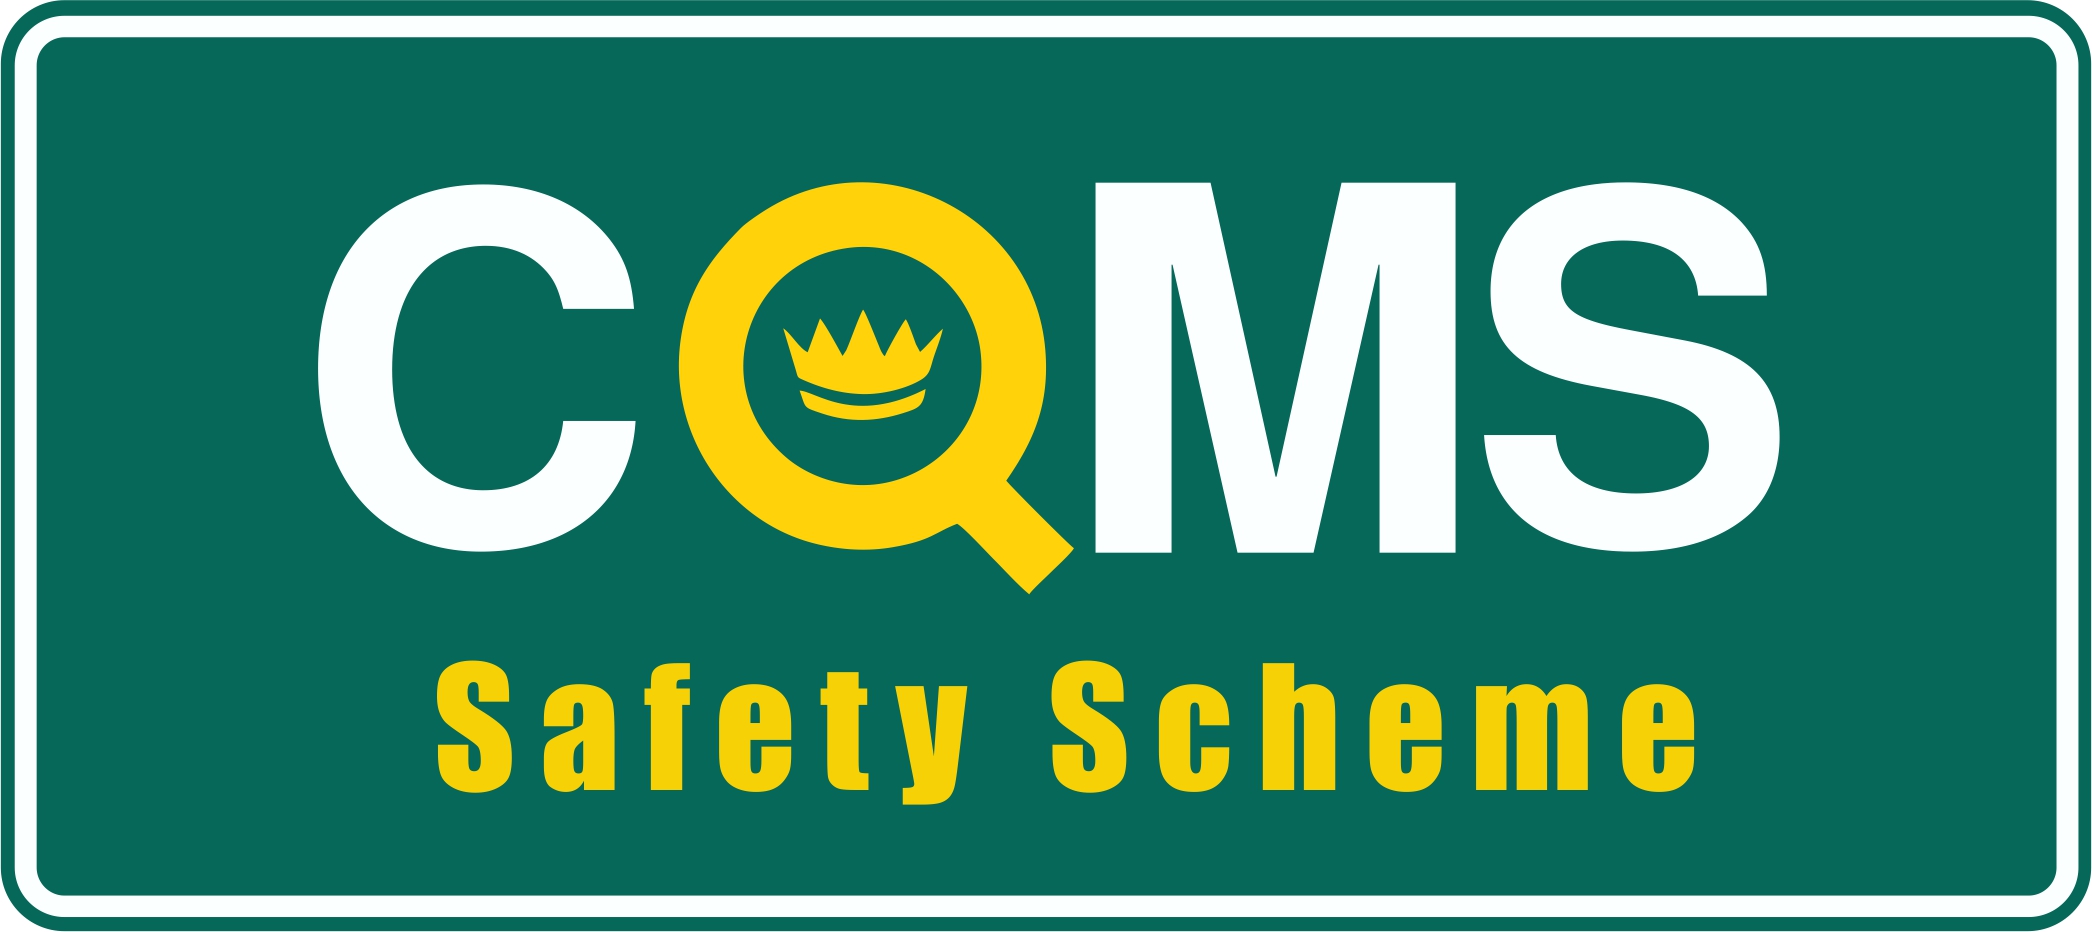 CQMS Safety Scheme logo